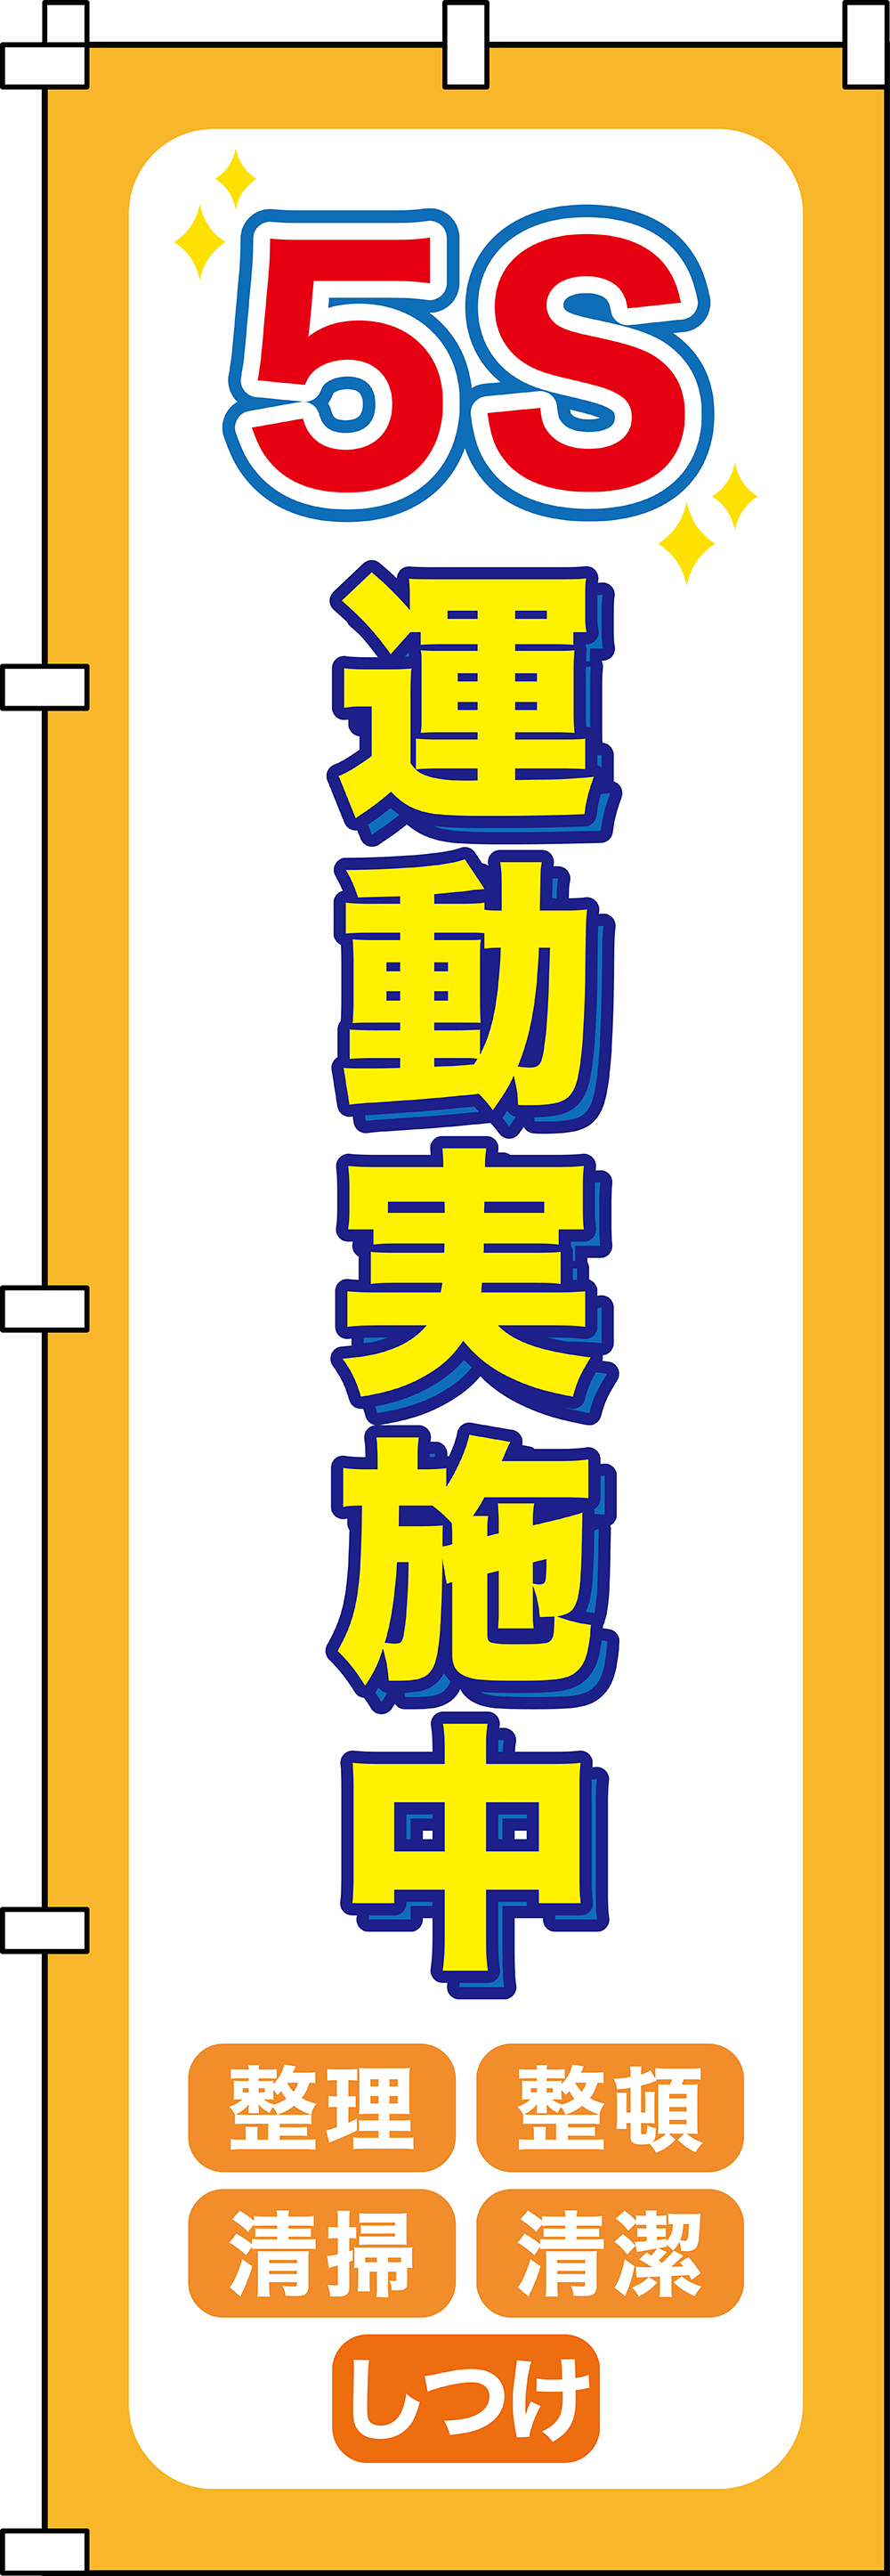 ノボリ旗 255014 ノボリ-14,（安全標識・安全用品 日本緑十字社）,の通販 詳細情報,電設資材・電線・ケーブル・安全用品 ネット通販  Watanabe 電設資材 電線 ケーブル ネット 通販 Watanabe